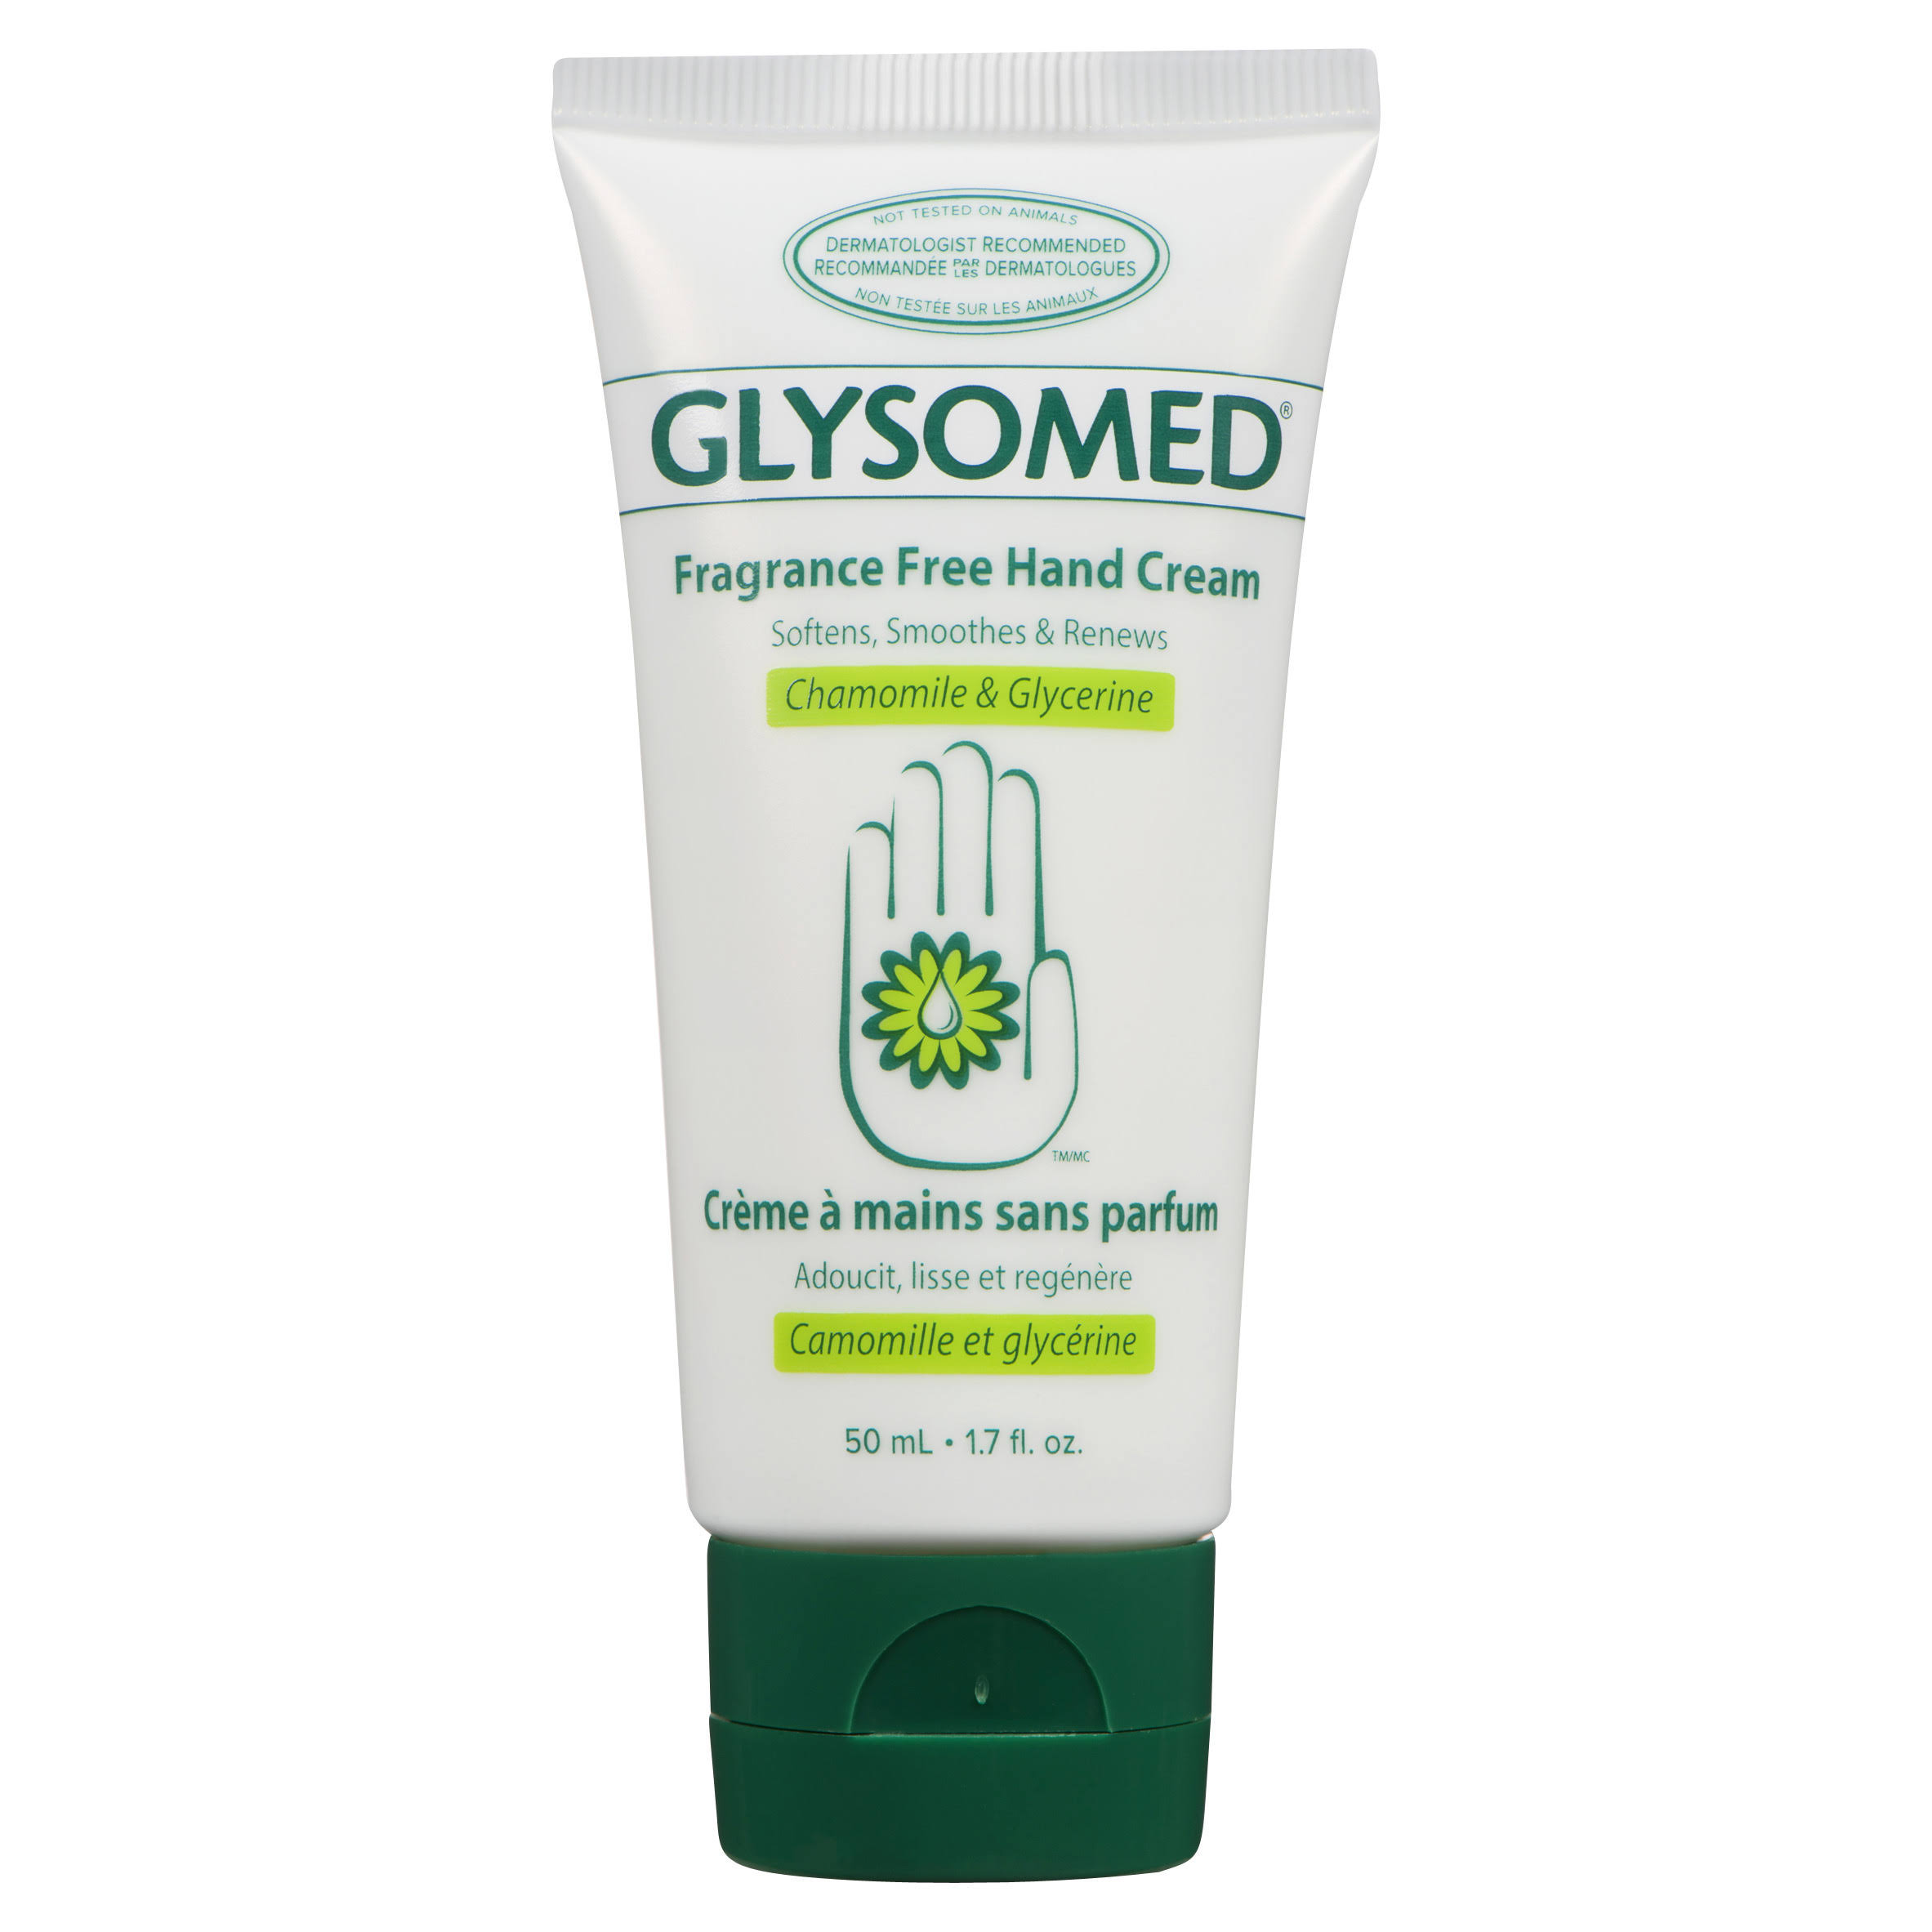 Glysomed Fragrance Free Hand Cream - 50ml